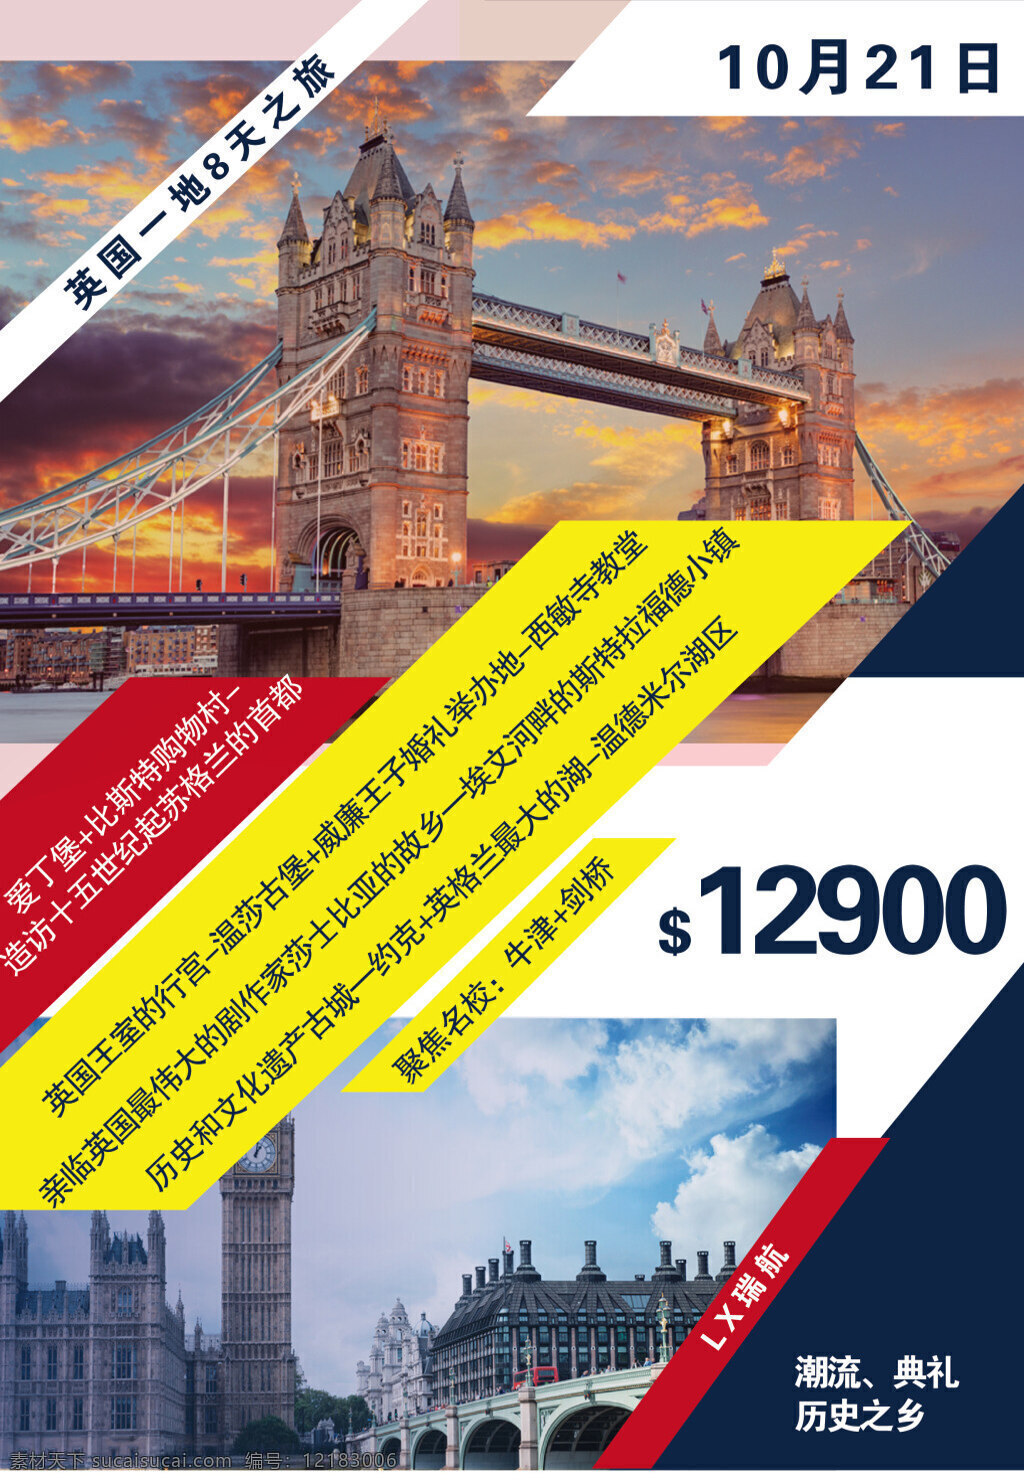 创意 英国旅游 海报 版式设计 设计模板 旅行 旅游 旅行社 旅程 旅途 创意模板 杂志 源文件 桥 爱丁堡 排版